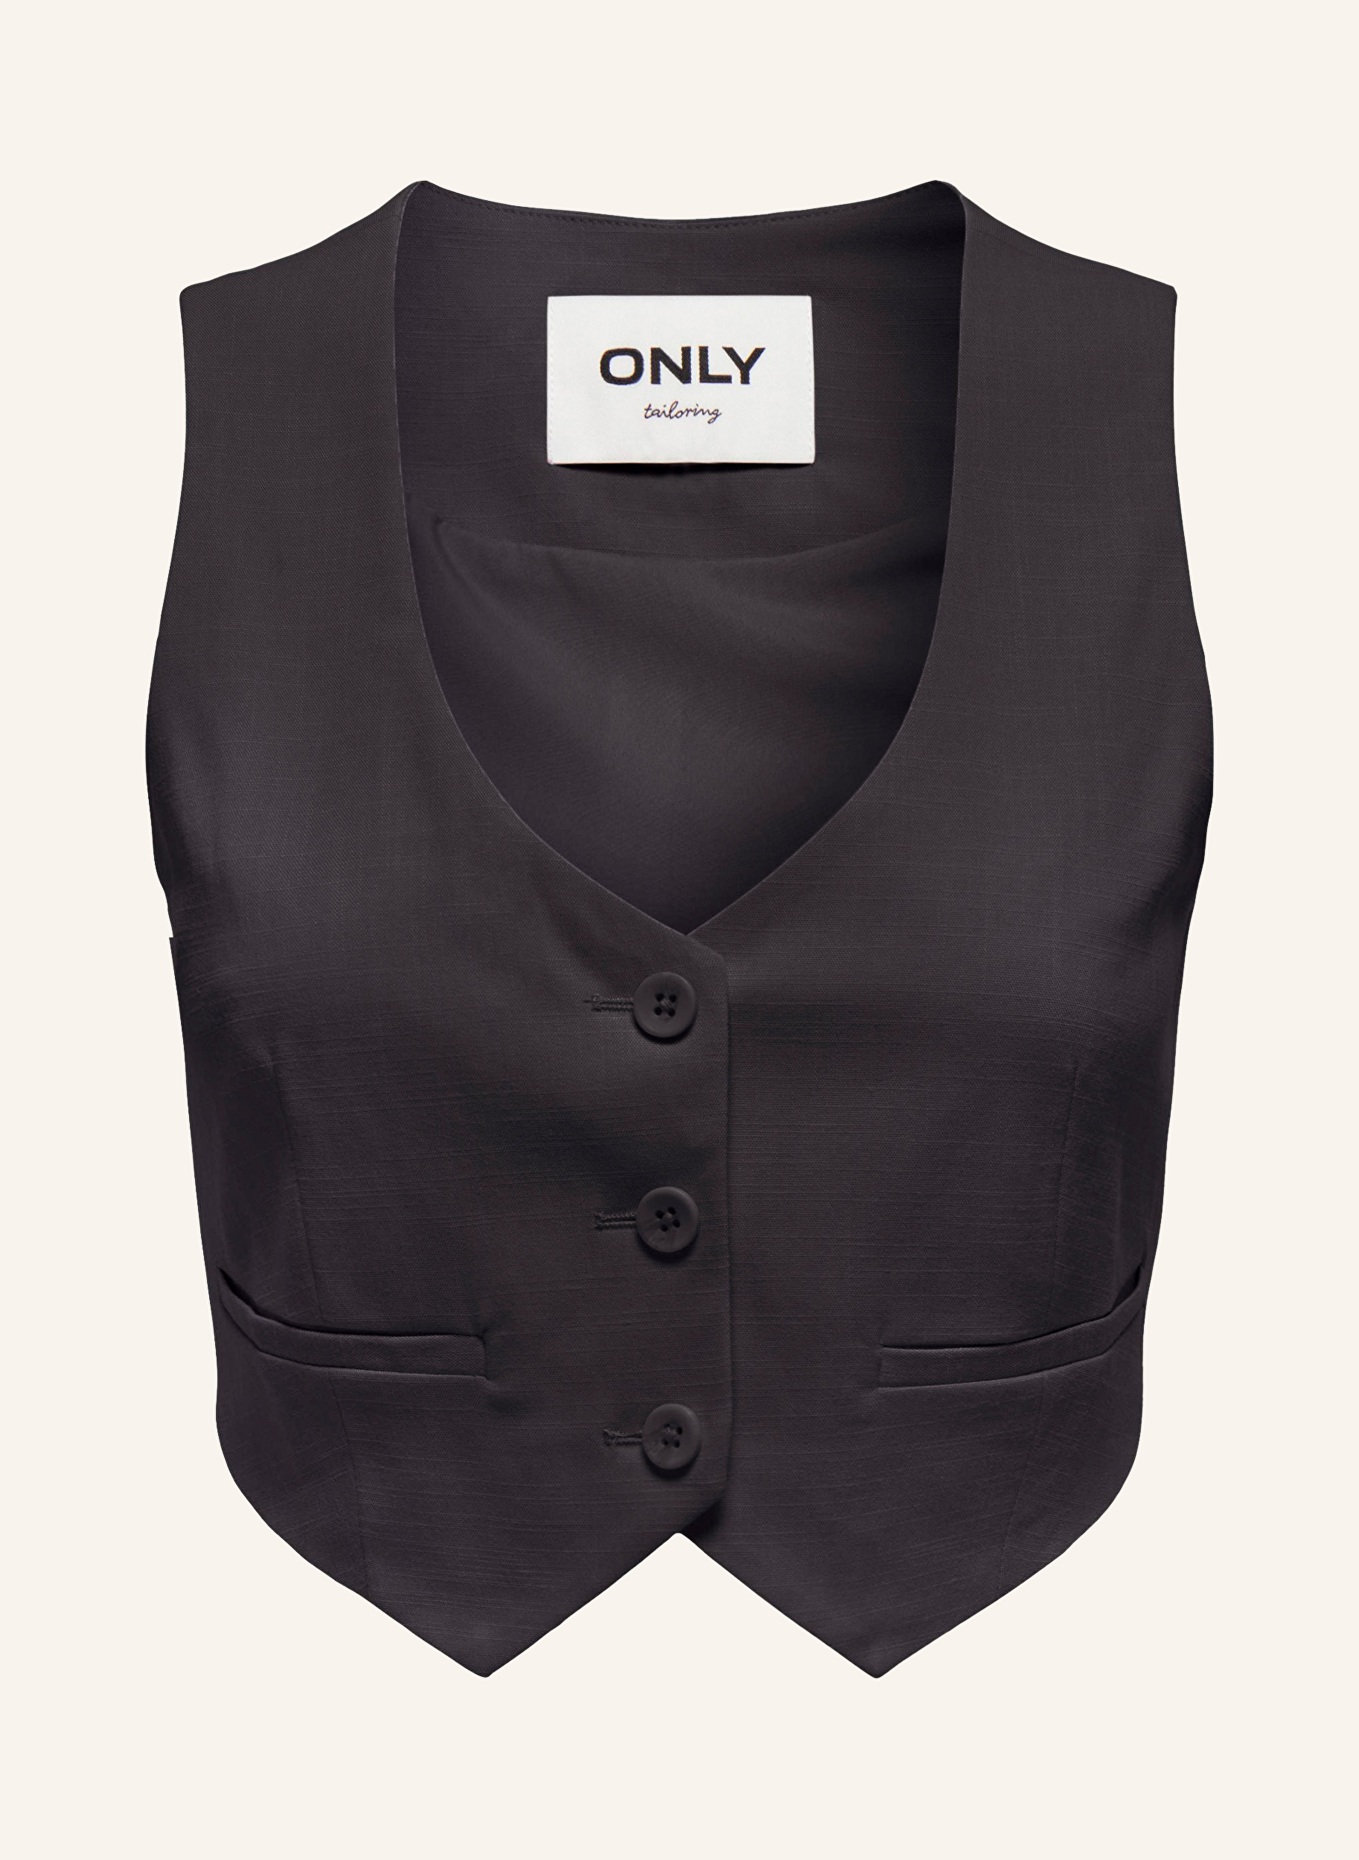 ONLY Blazer vest, Color: BLACK (Image 1)